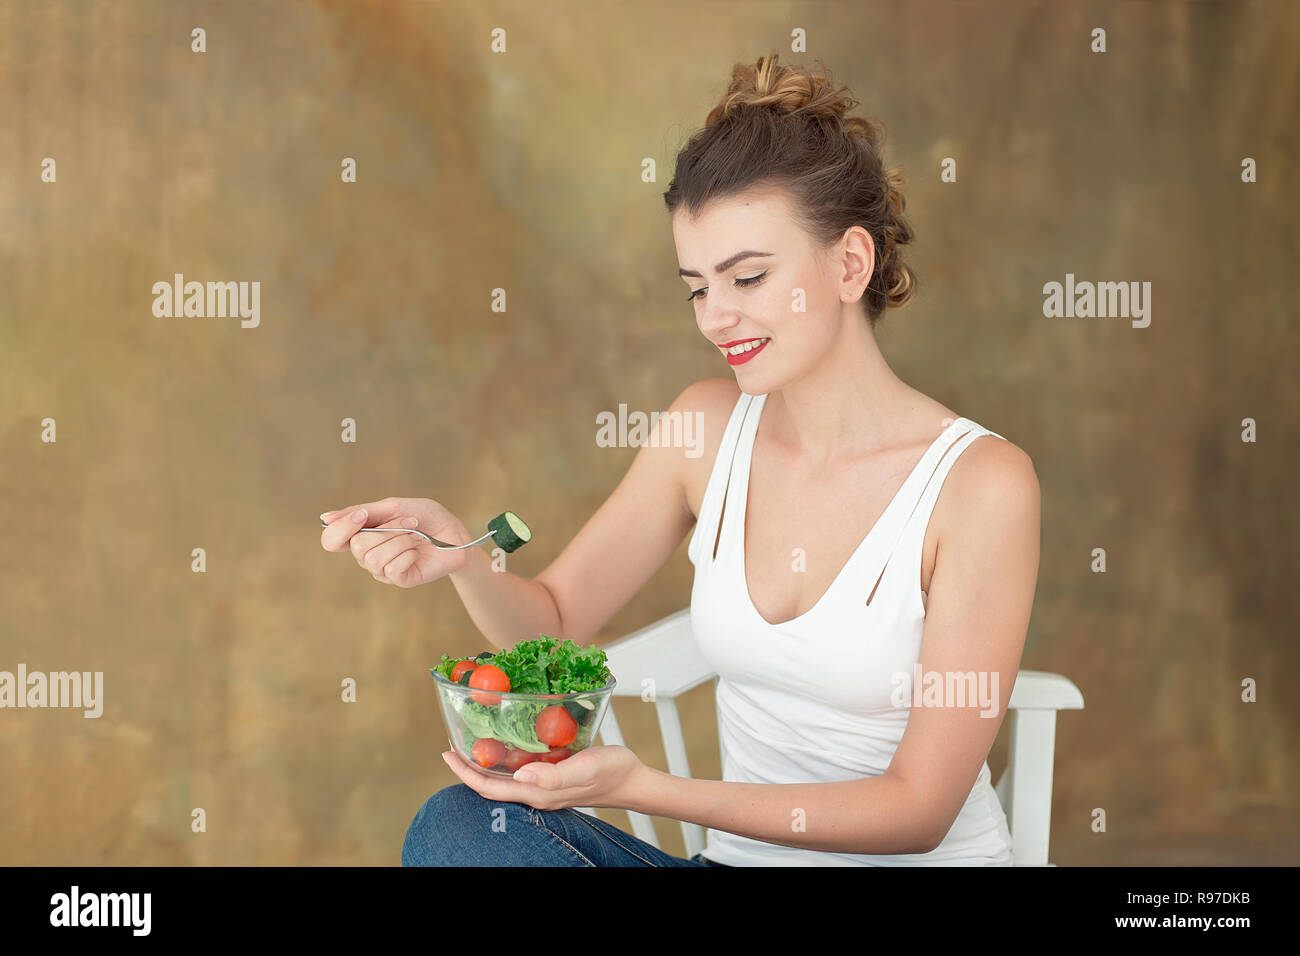 Wunderschöne gesunde Frau auf einem weißen Stuhl Essen einer gesunden Salat aus Rucola, Bio Tomaten Stockfoto